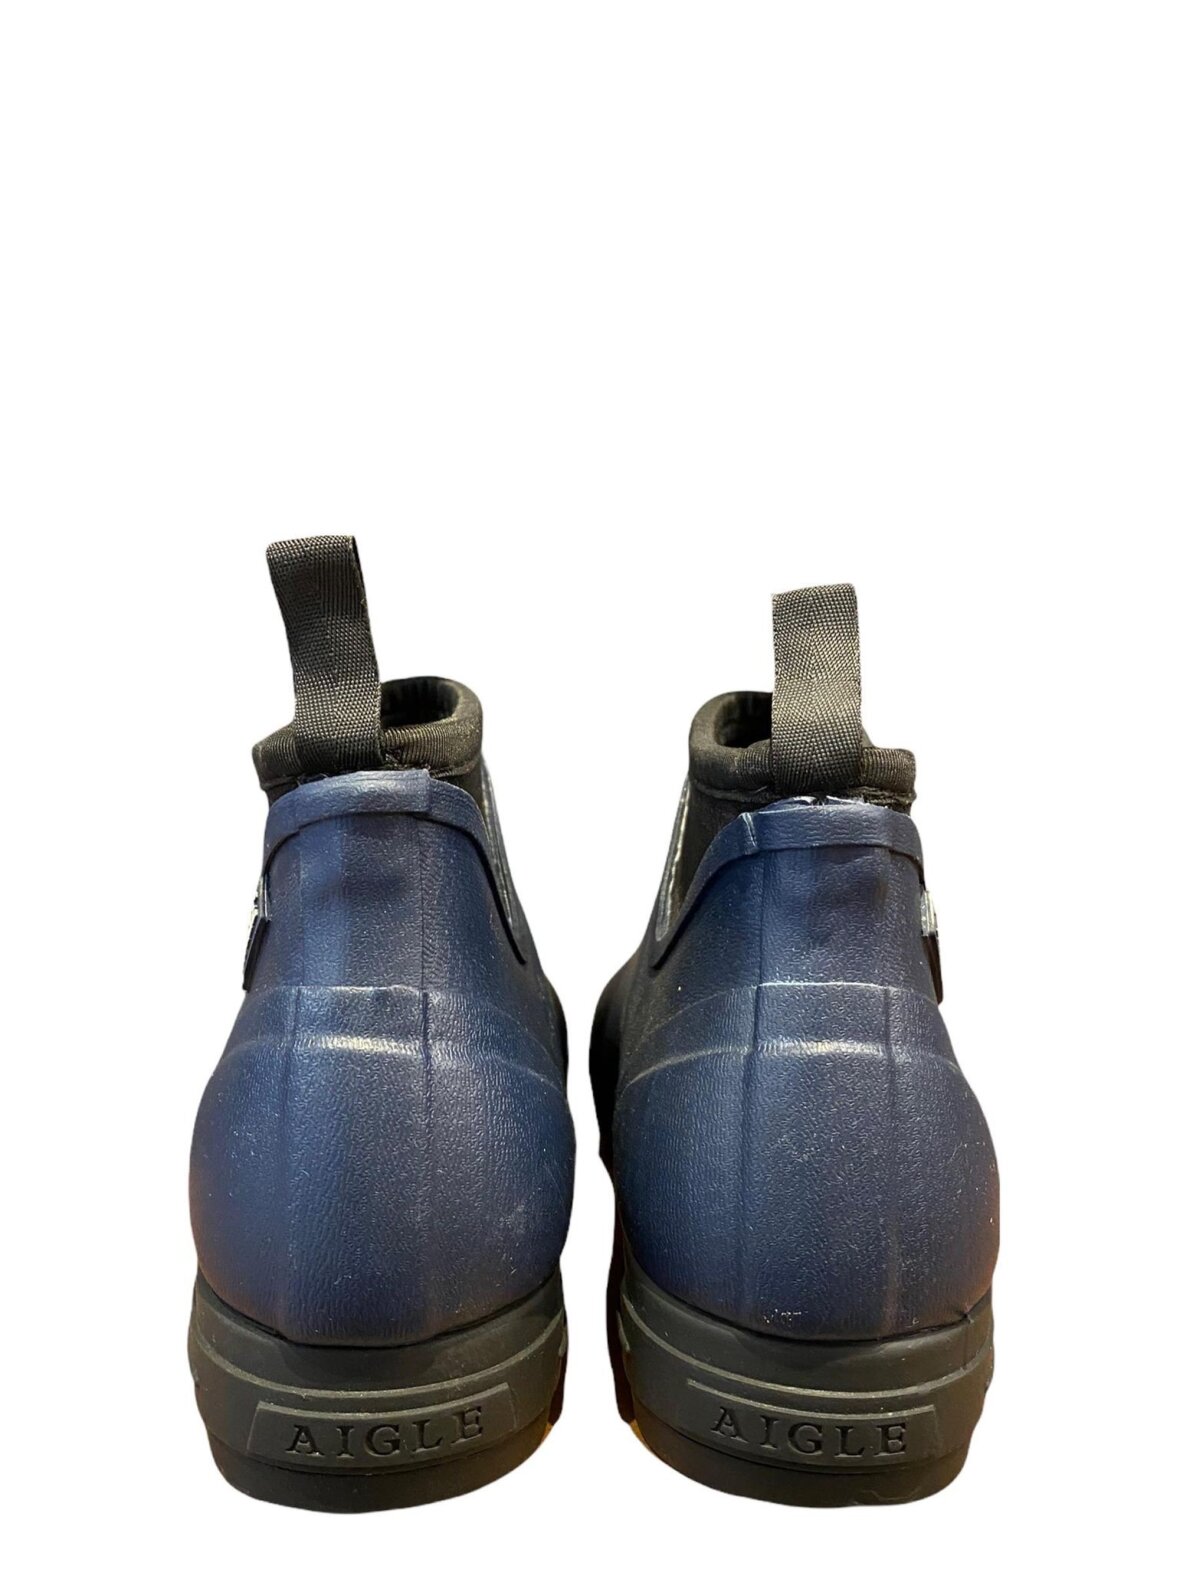 Brobrygge Andrew Halliday Avenue Helle M - Gummistøvler/Plaststøvler - AIGLE - kort gummistøvle